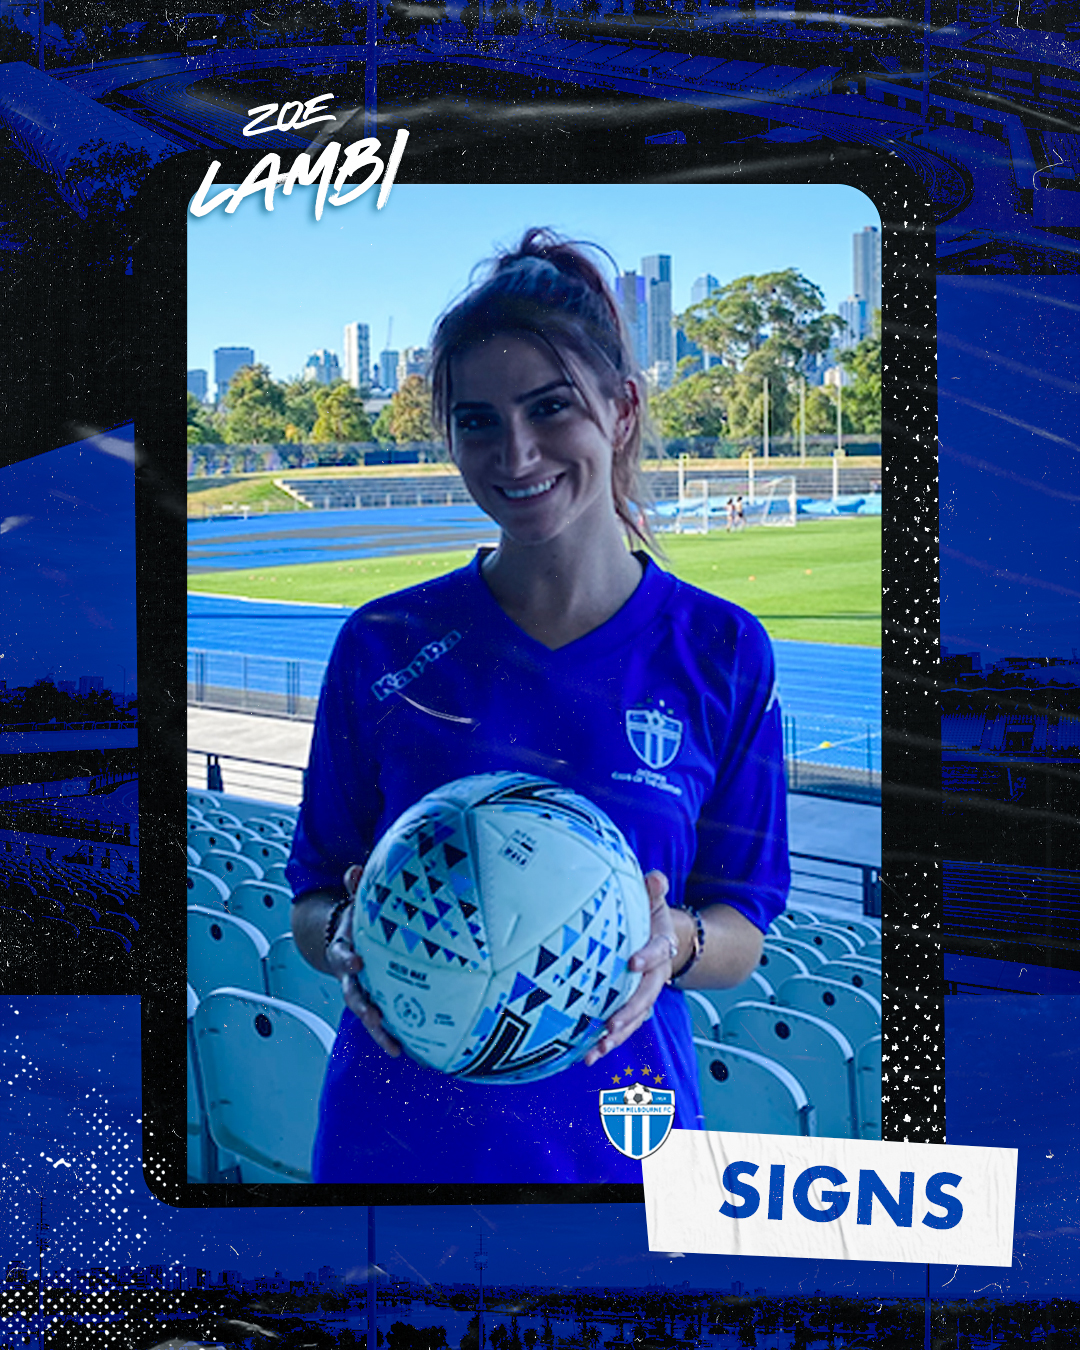 South sign midfielder Zoe Lambi